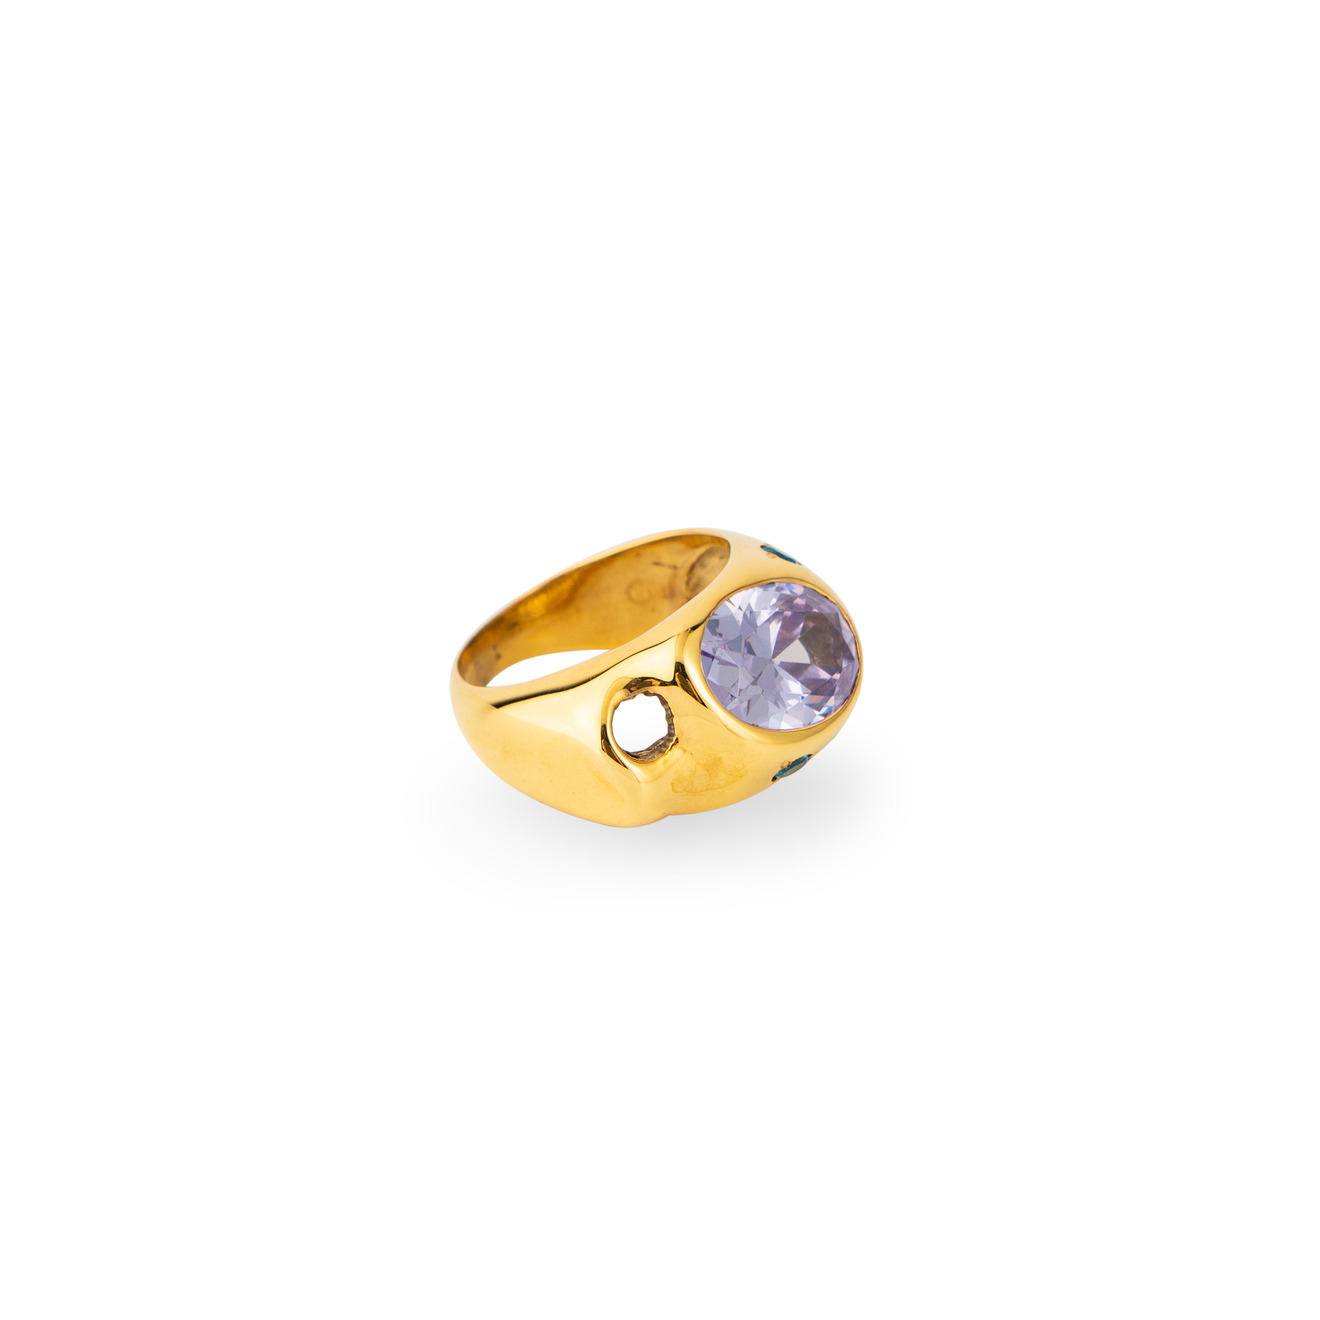 Janashia Золотистое кольцо Ava волнообразной формы со вставками из розово-голубых кристаллов janashia объемное позолоченное кольцо с жемчугом